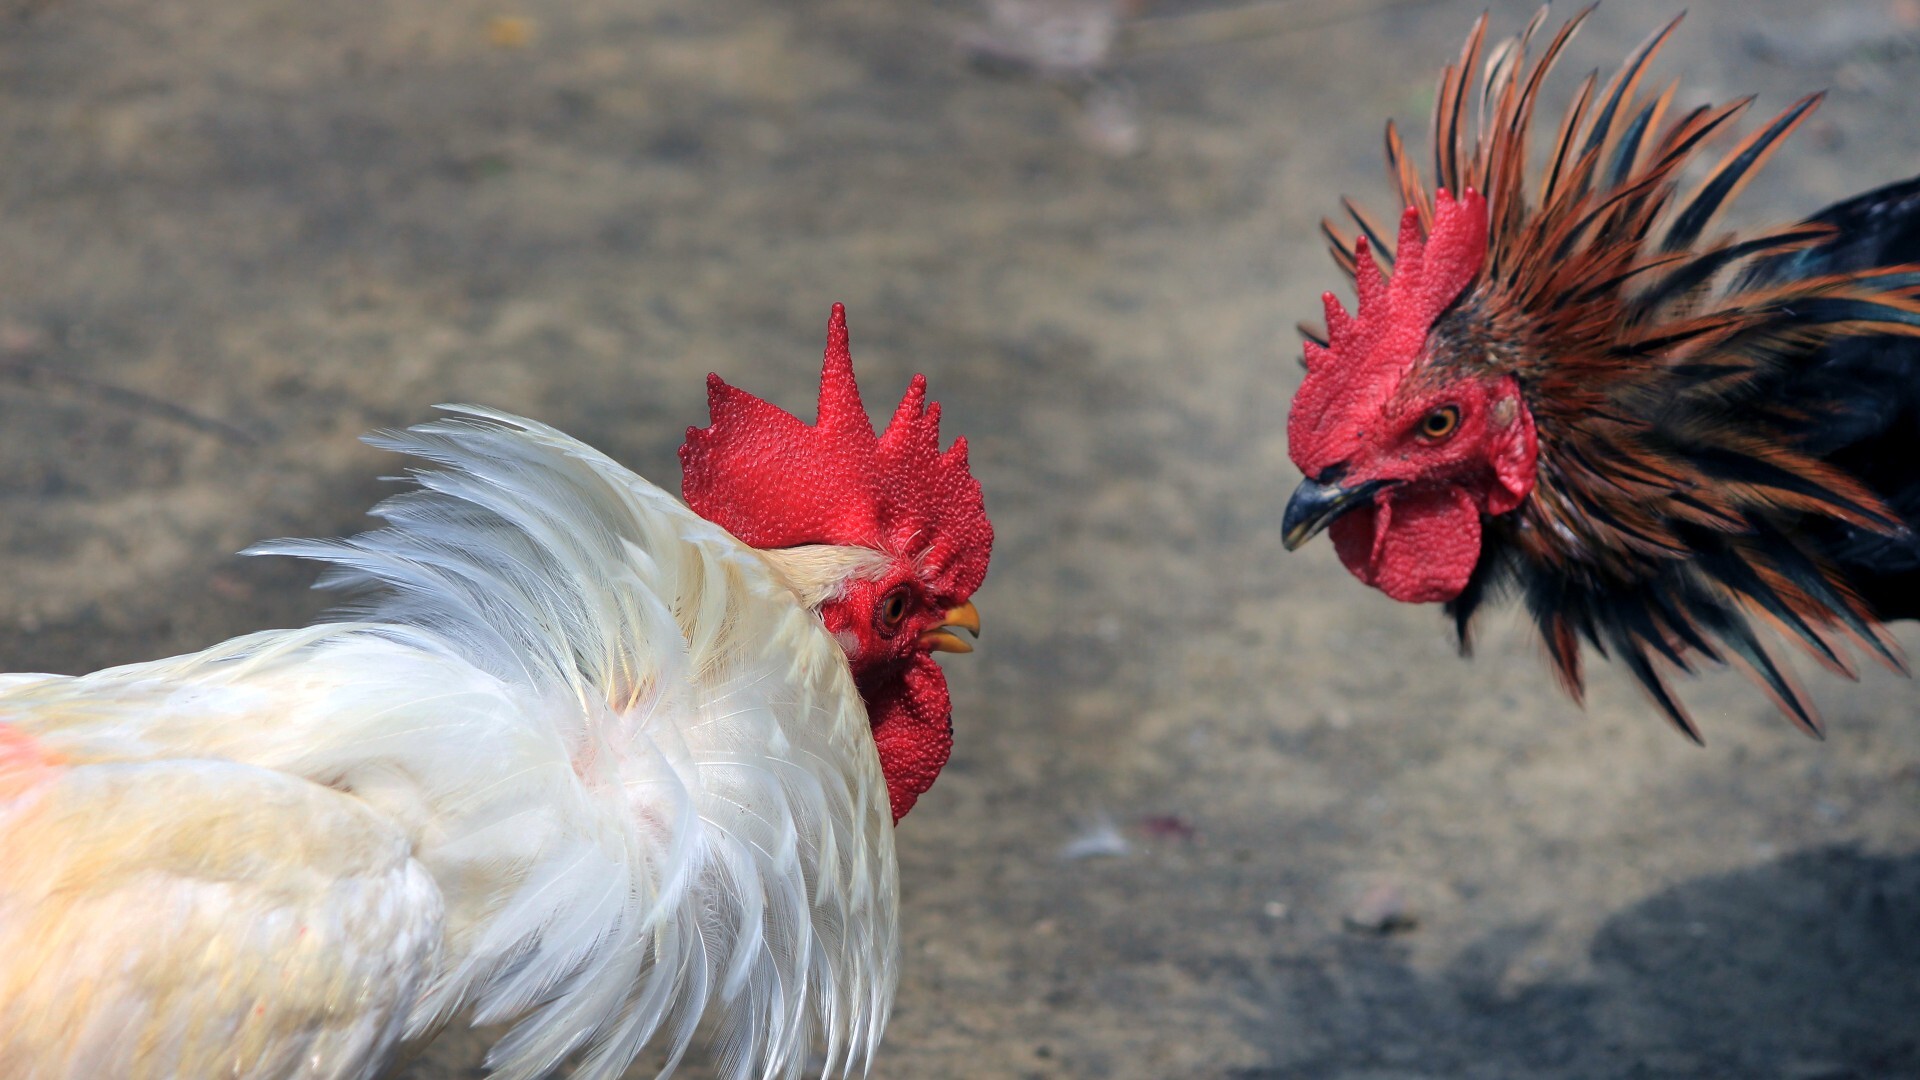 Detenido un veterinario por cortar ilegalmente crestas a más de  gallos  de pelea